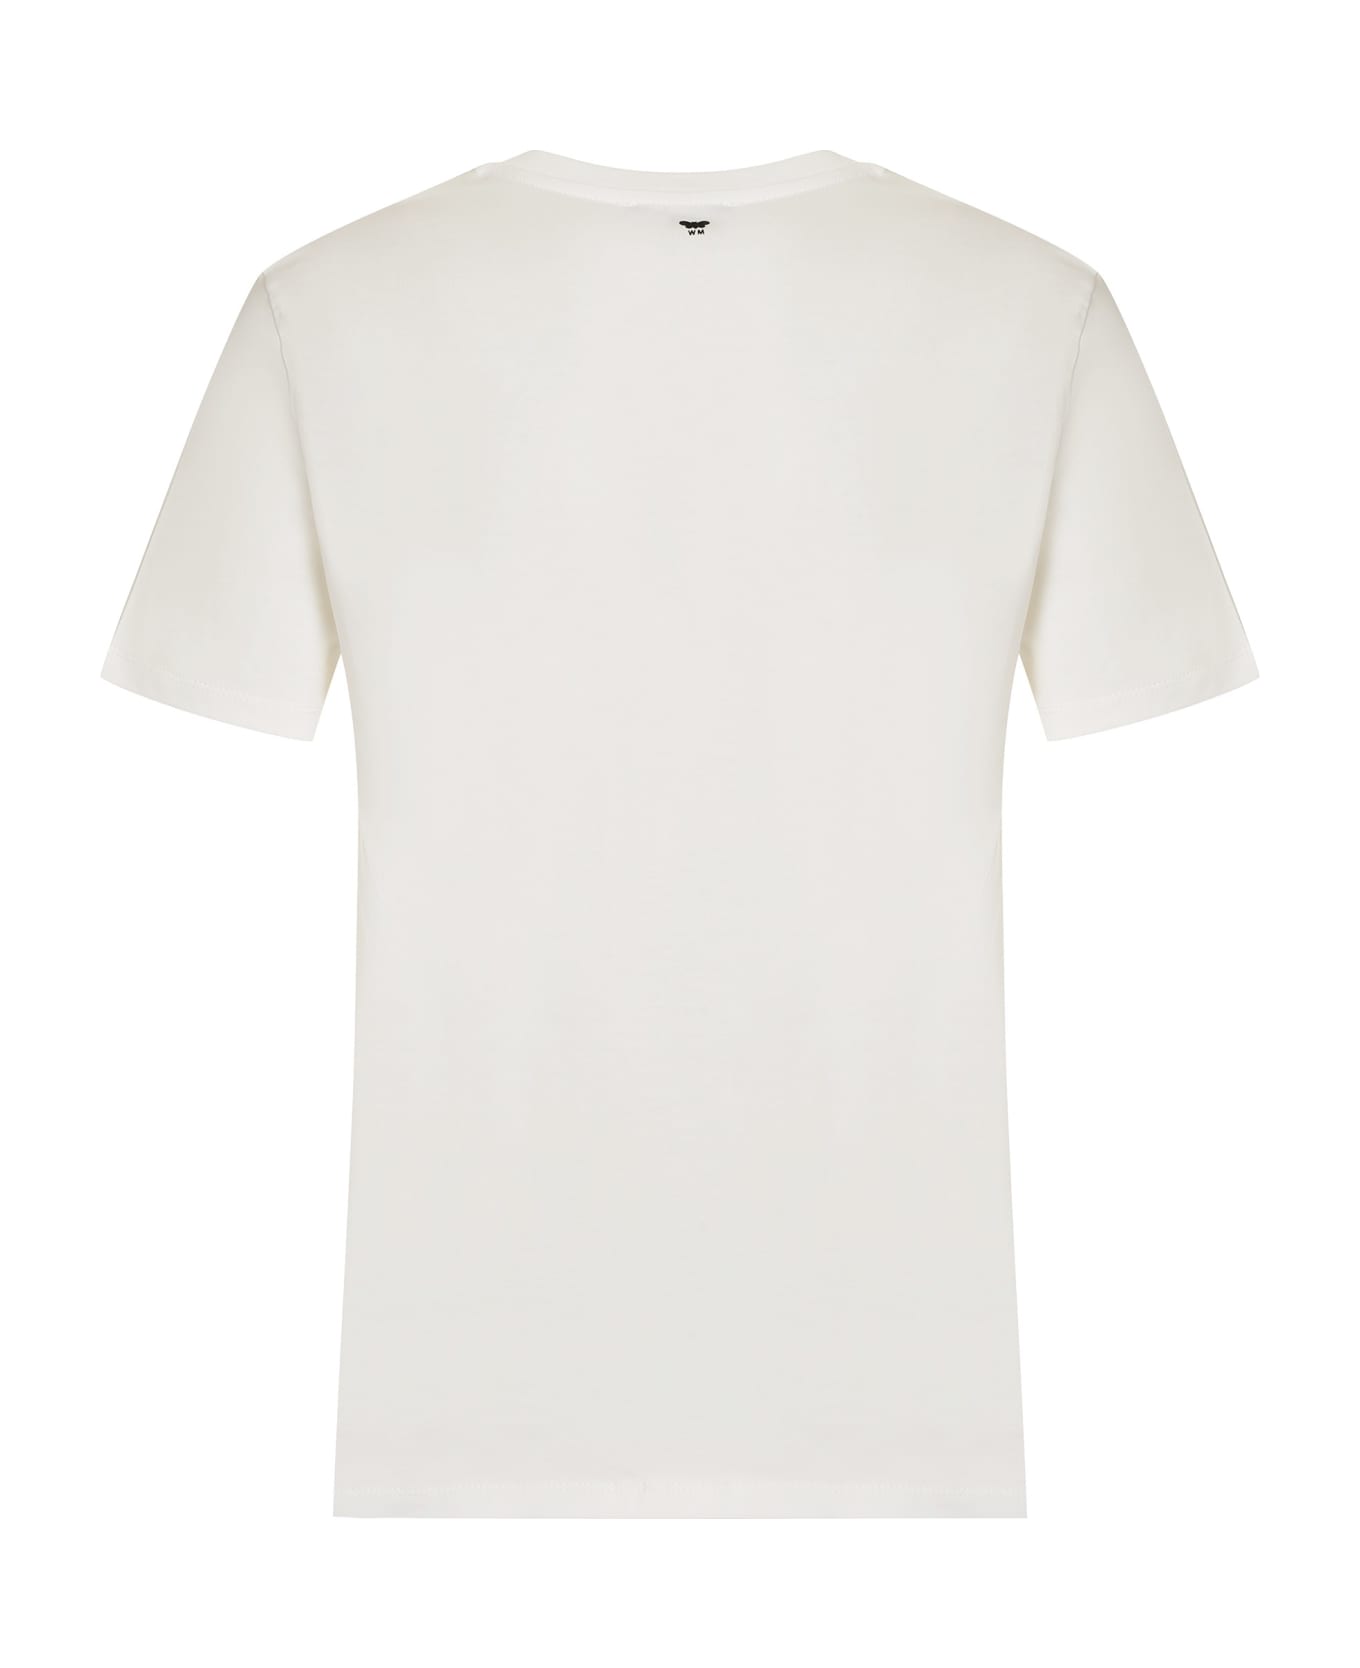 Weekend Max Mara Nervi Cotton Crew-neck T-shirt - White